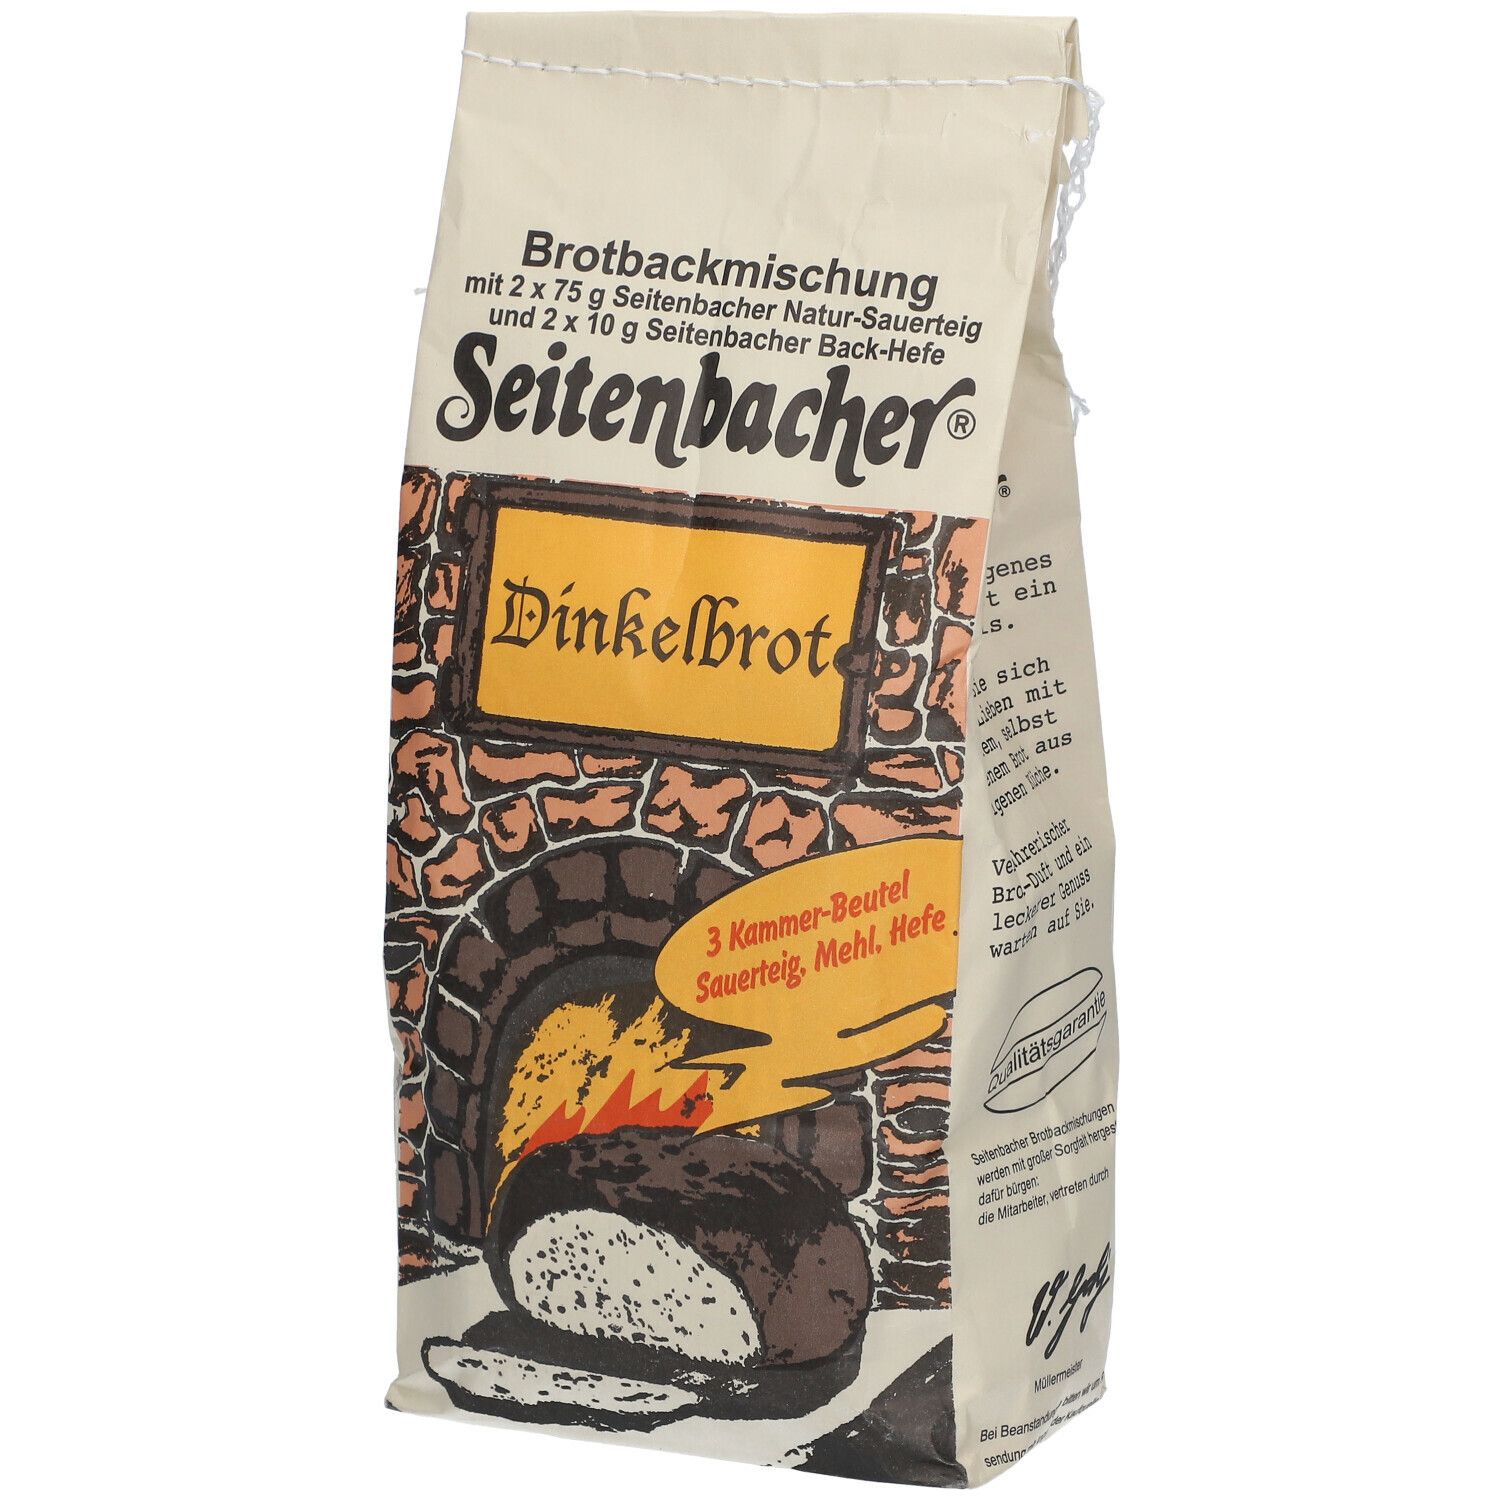 Seitenbacher® Dinkelbrot